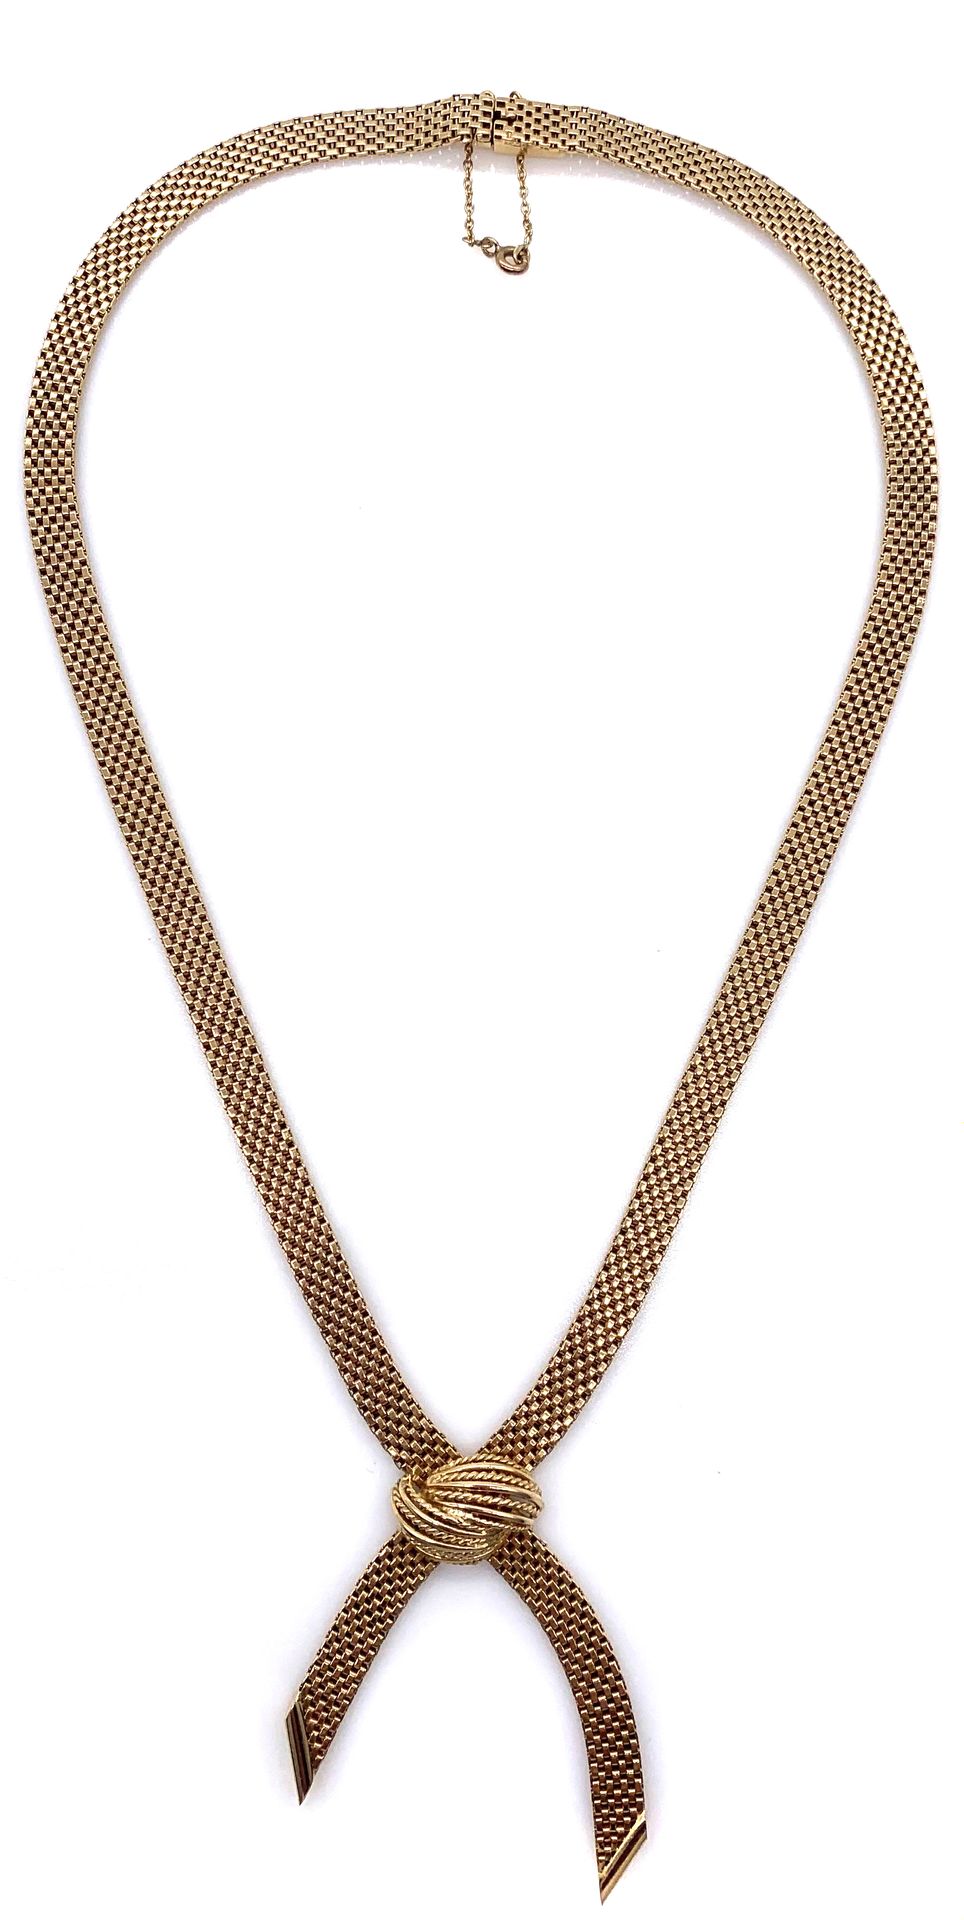 Null 矩形几何网状物制成的项链，上面有一个结。镶嵌在18K黄金中。安全扣。 长度：45厘米。 毛重：42.08克。 一条黄金项链。